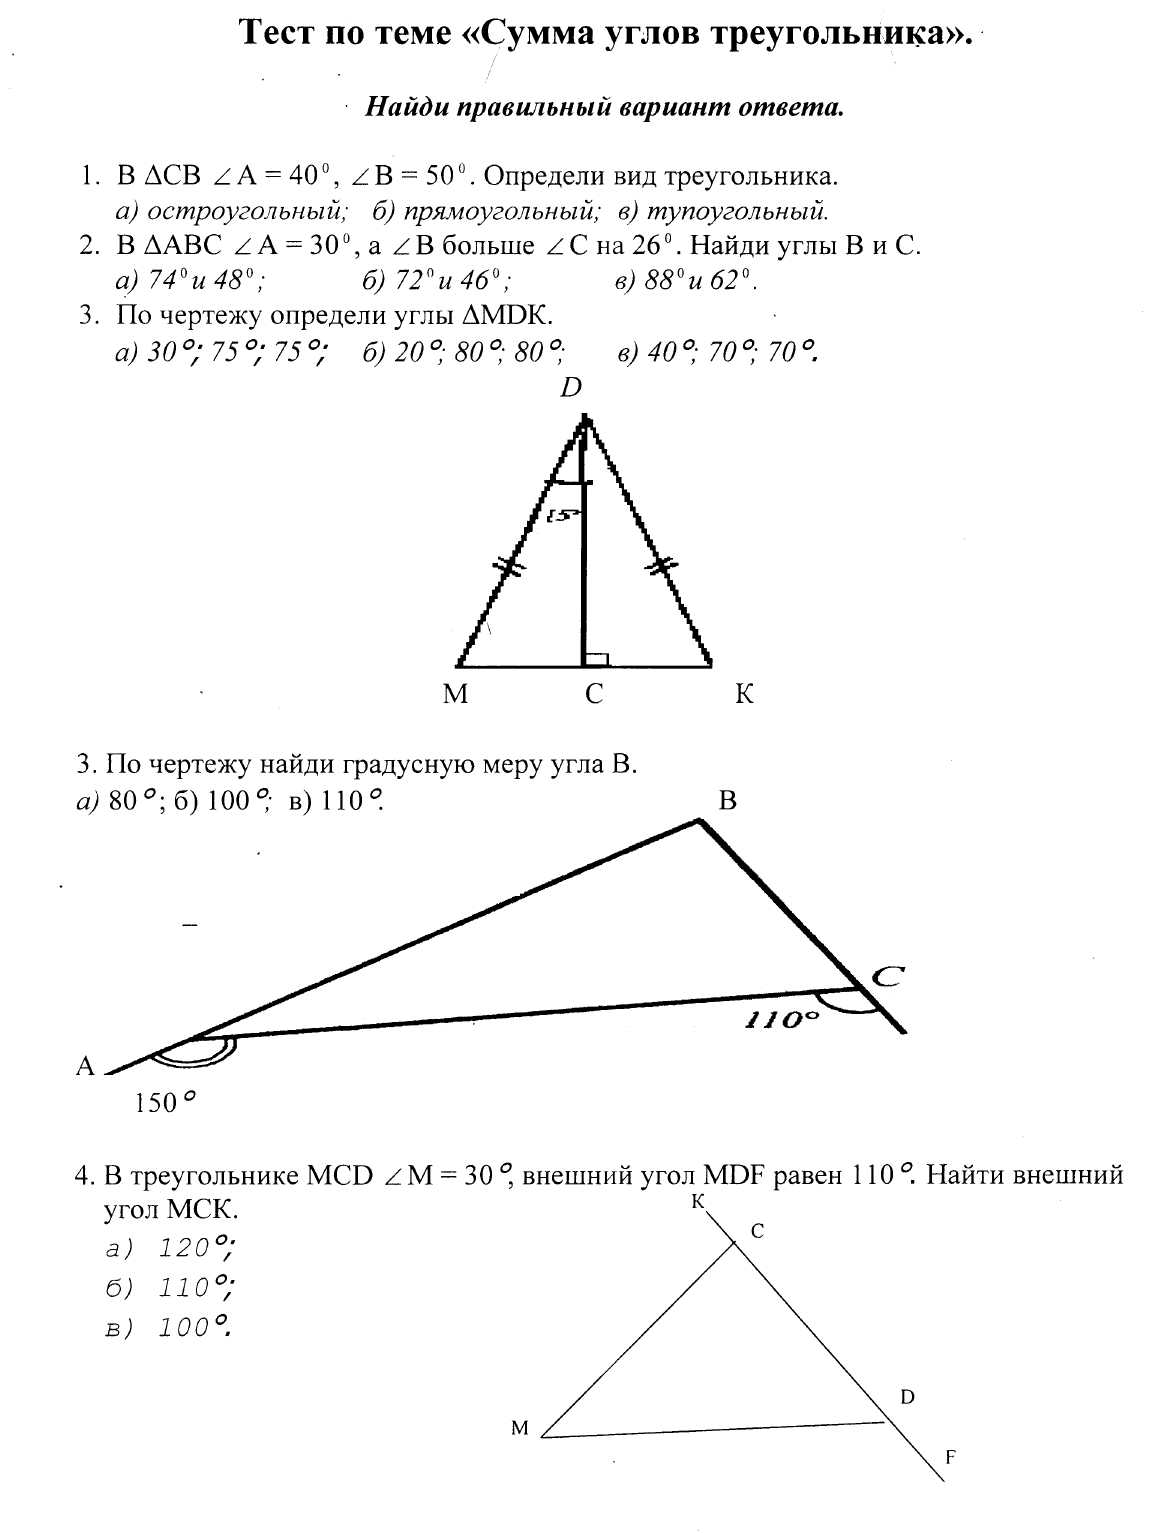 Тест по теме Сумма углов треугольника (7 класс)